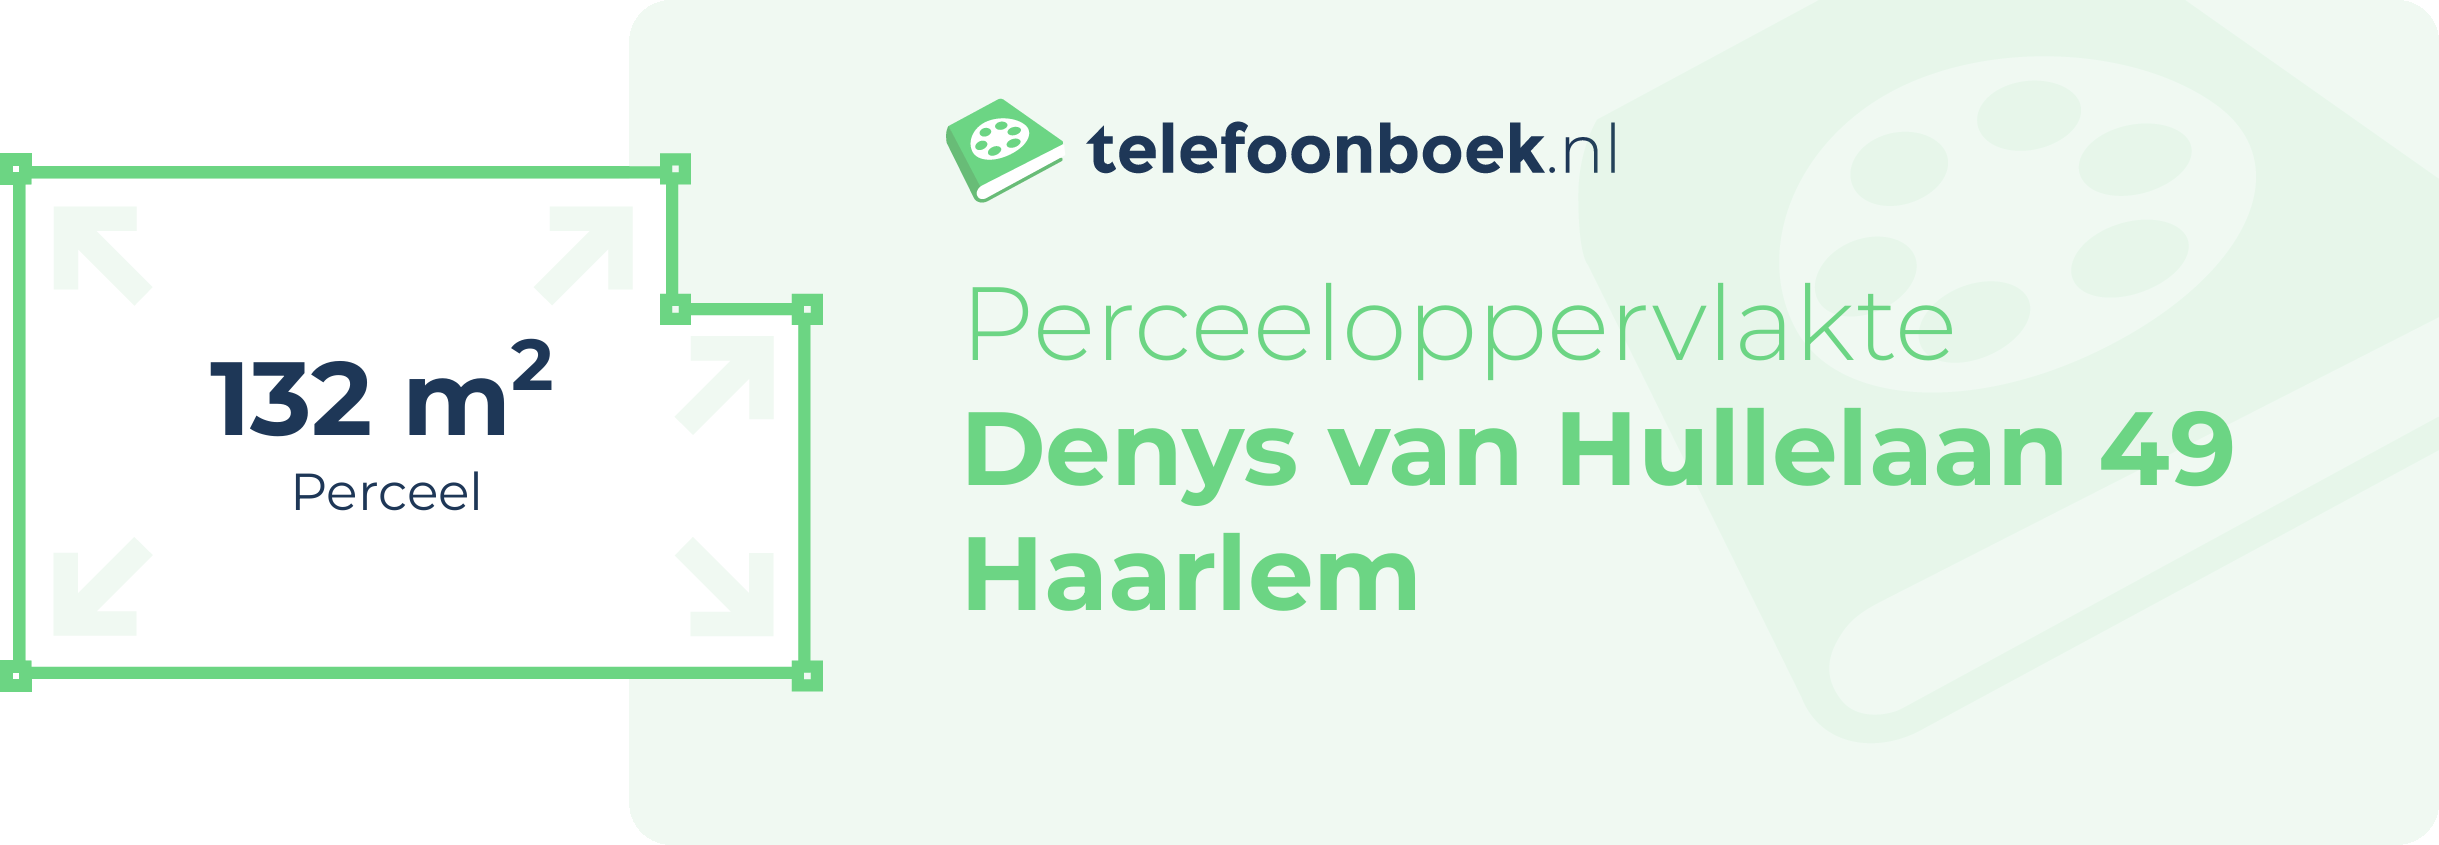 Perceeloppervlakte Denys Van Hullelaan 49 Haarlem